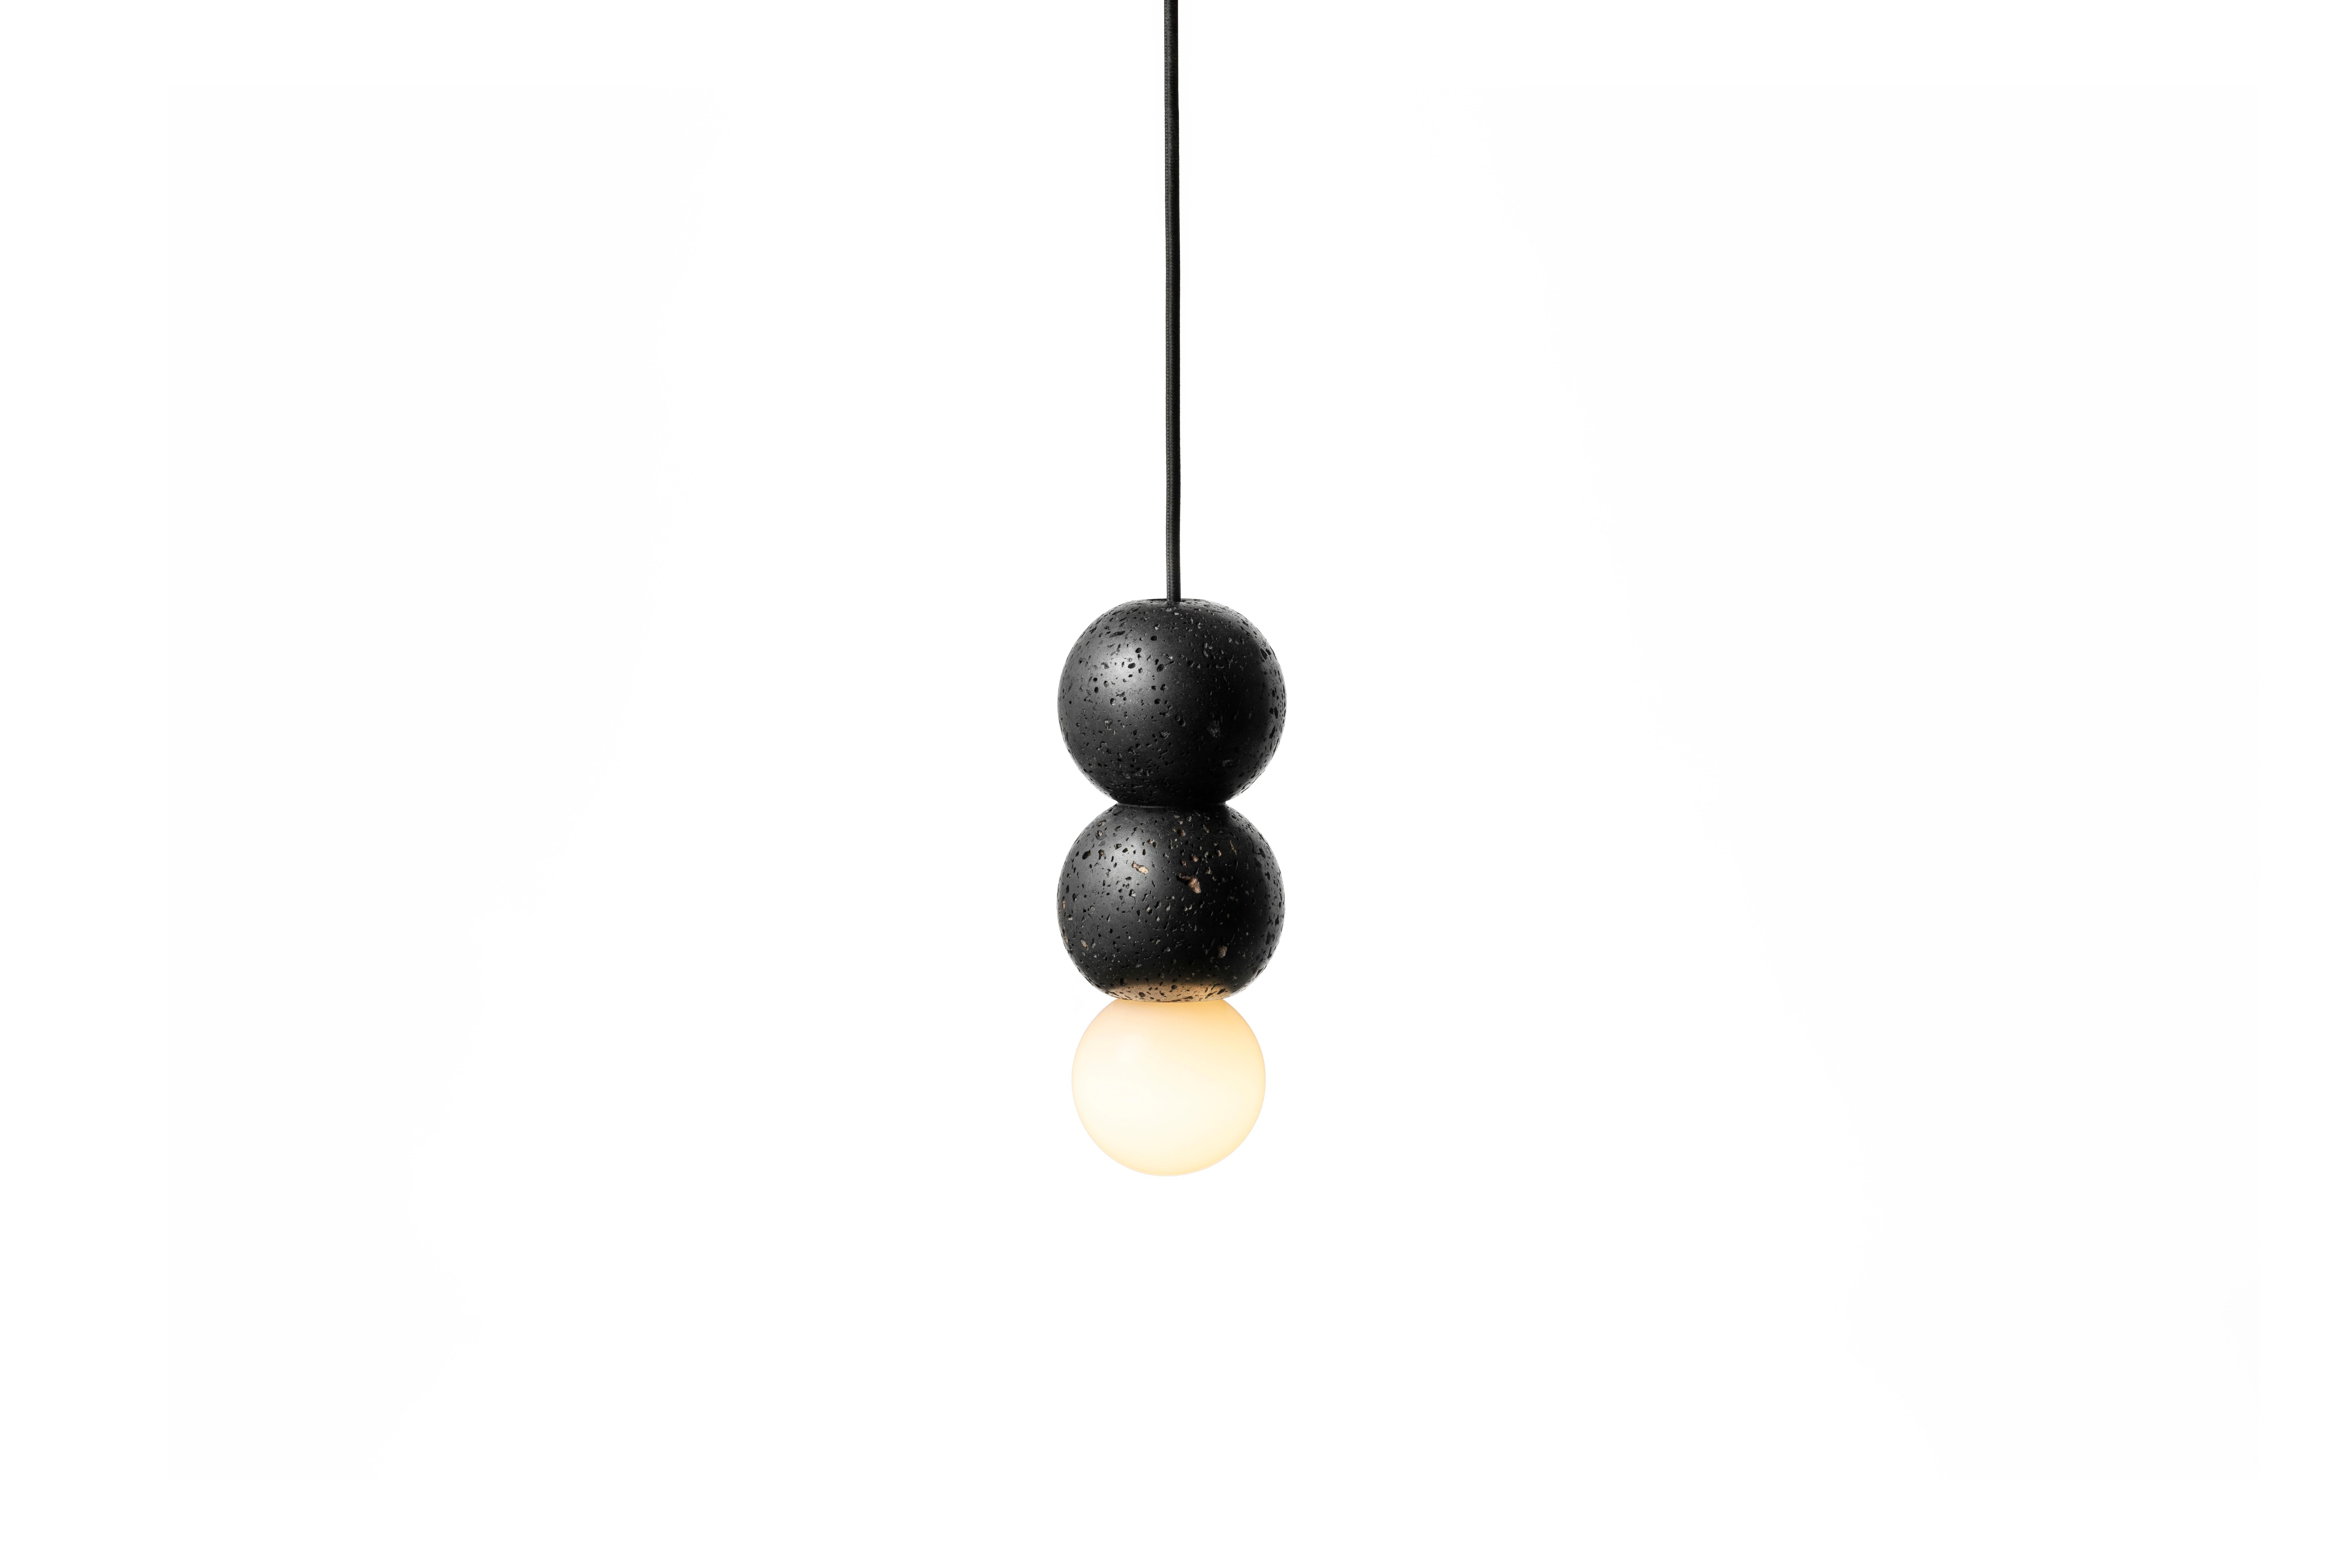 Lampe pendante 'OOPS' de Buzao x Bentu design.
Pierre de lave noire

Taille : 24 cm de haut, 9 cm de diamètre
Fil : 2 mètres noir (réglable)
Type de lampe : E27 LED 3W 100-240V 80Ra 200LM 2700K - Compatible avec le système électrique